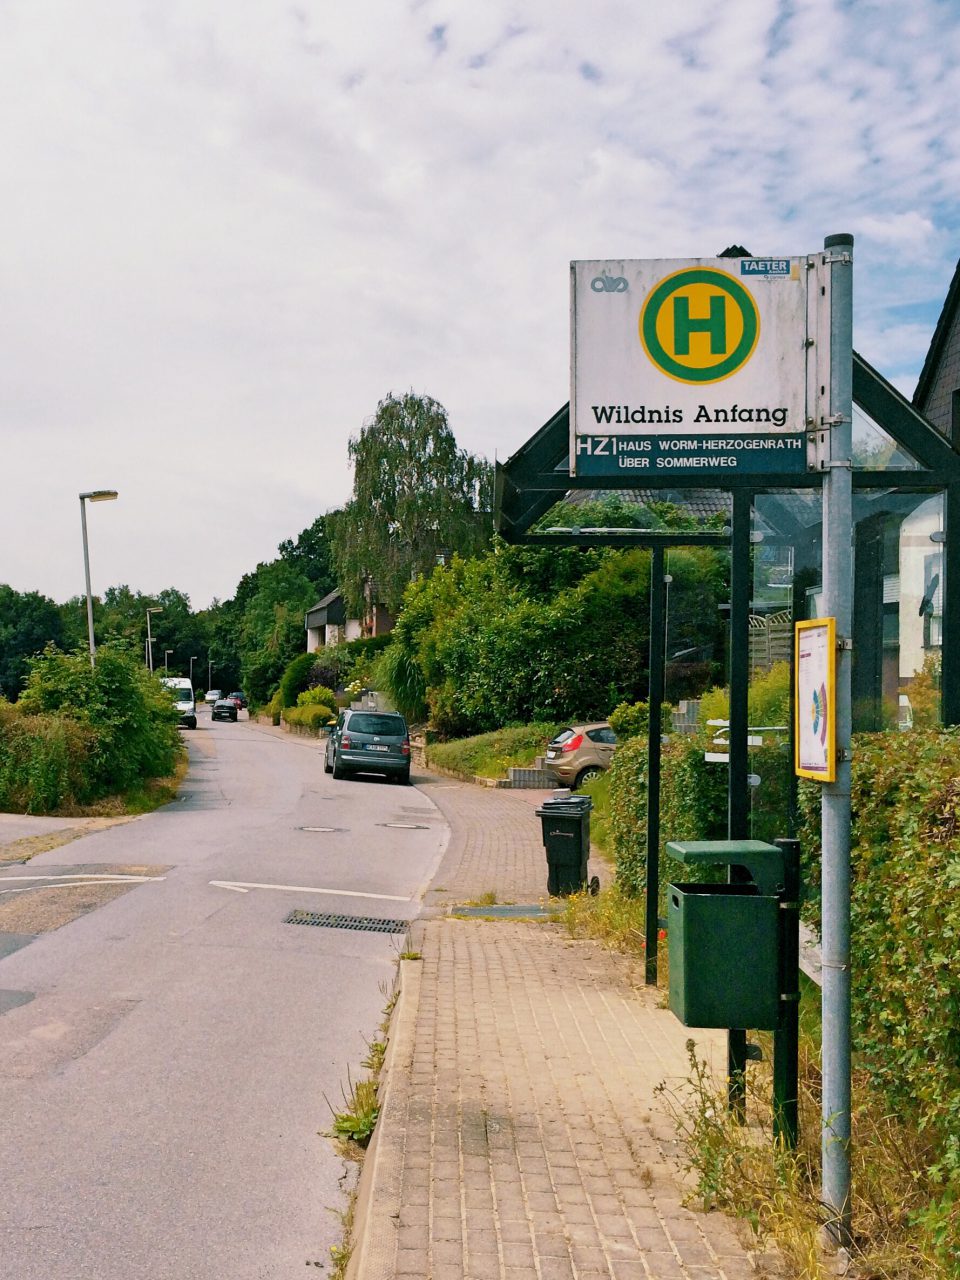 Das Foto zeigt die Bushaltestelle mit dem Namen Wildnis Anfang